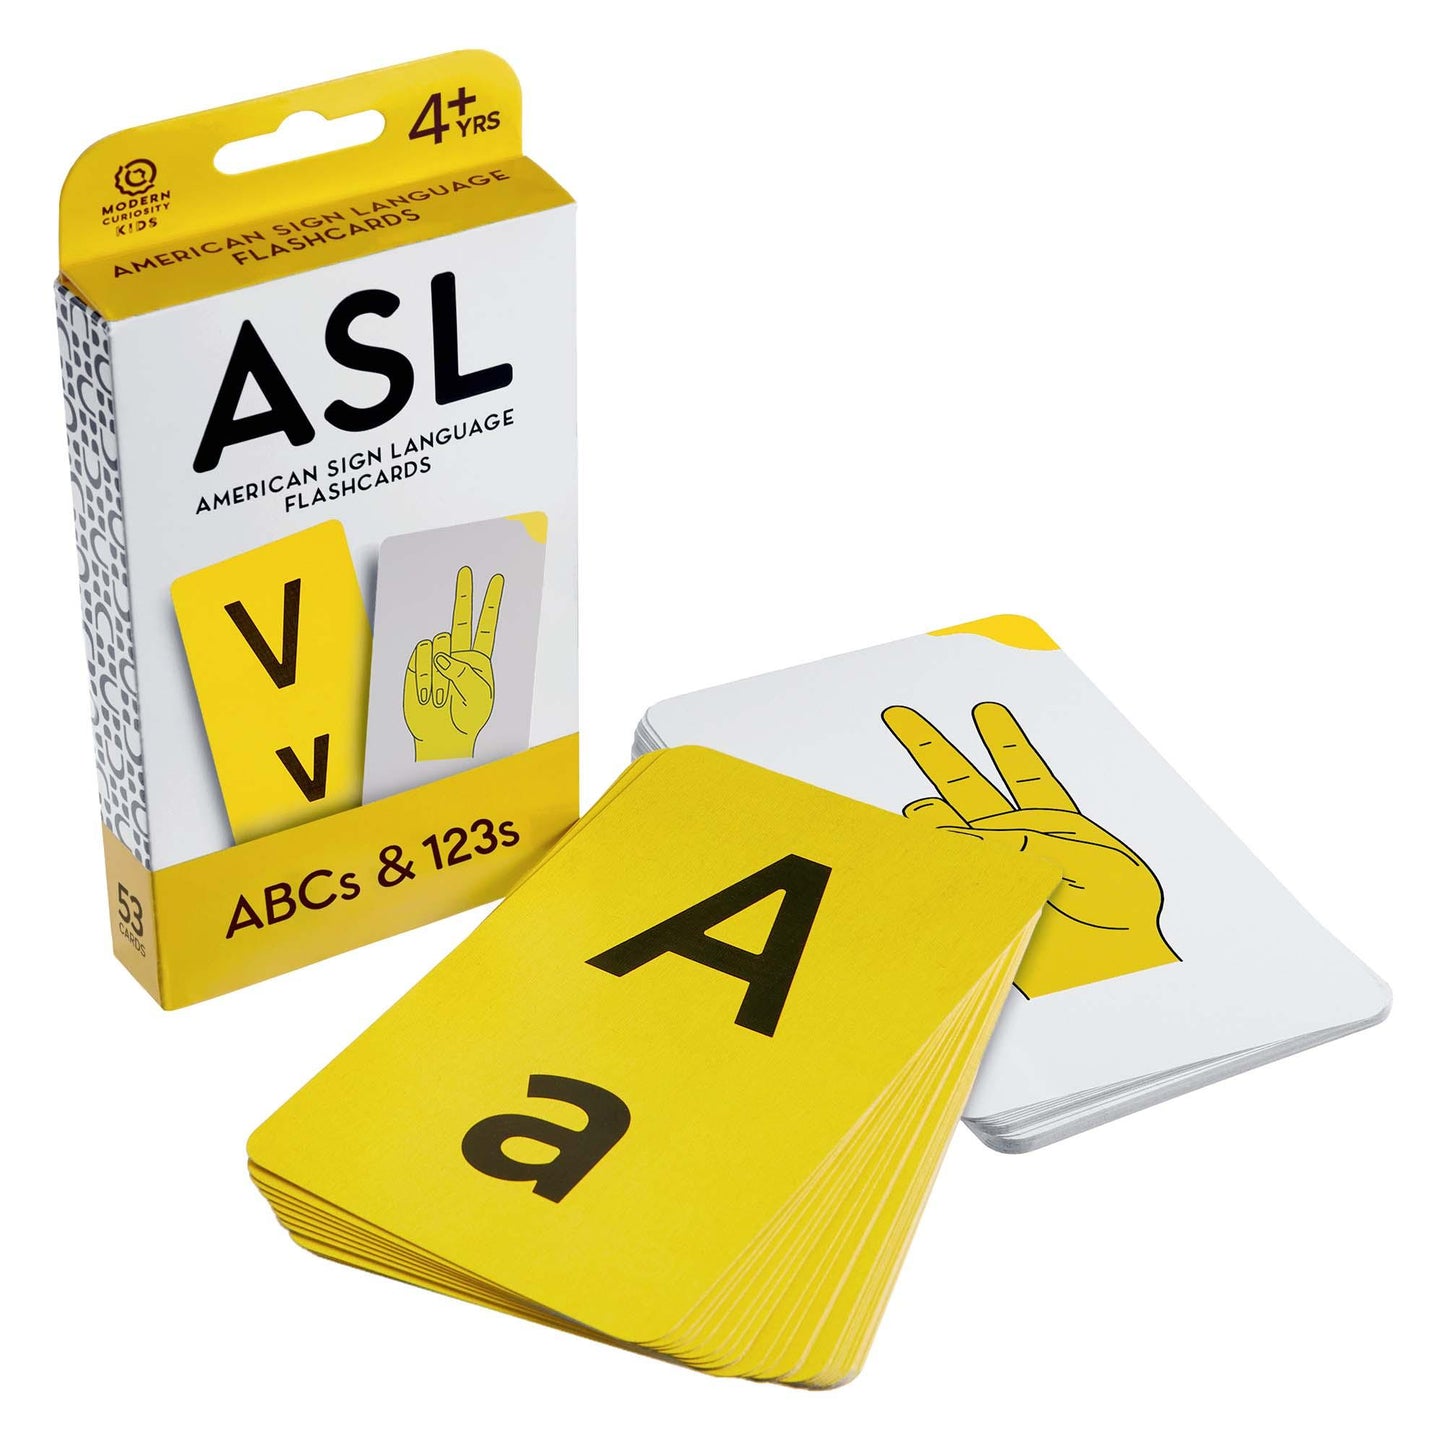 ASL Flashcards: ABCs & 123s